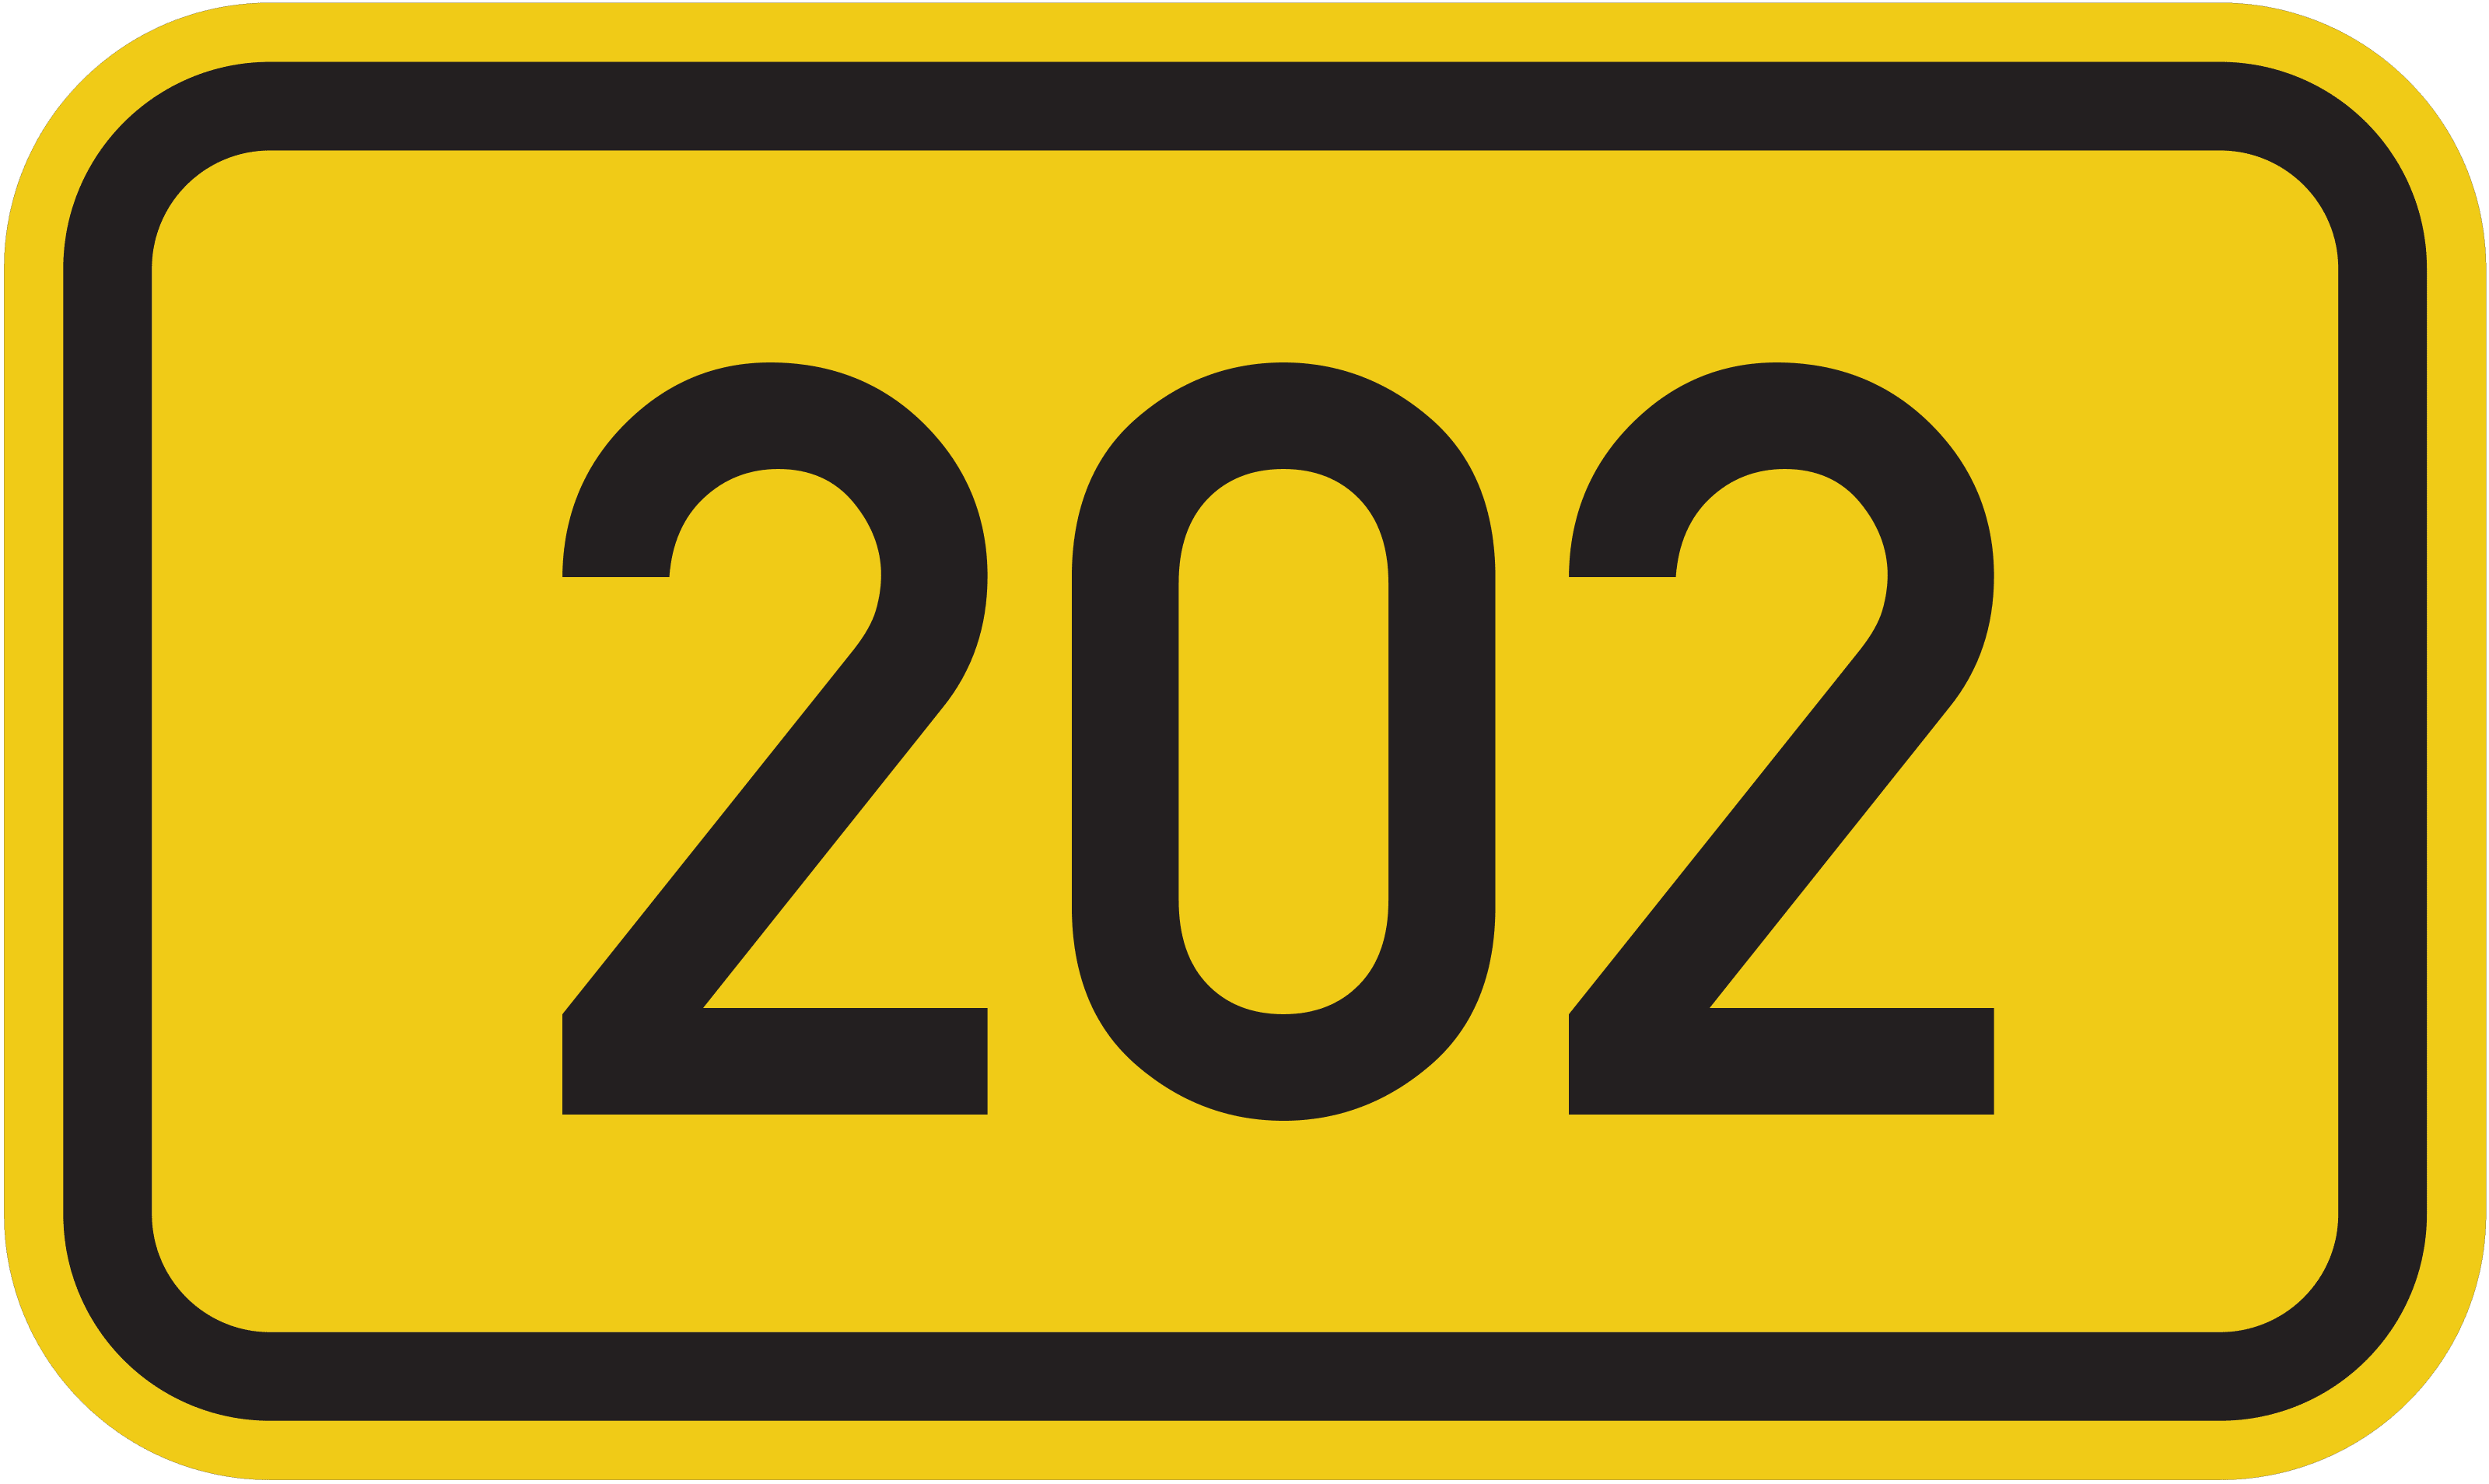 Bundesstraße B 202